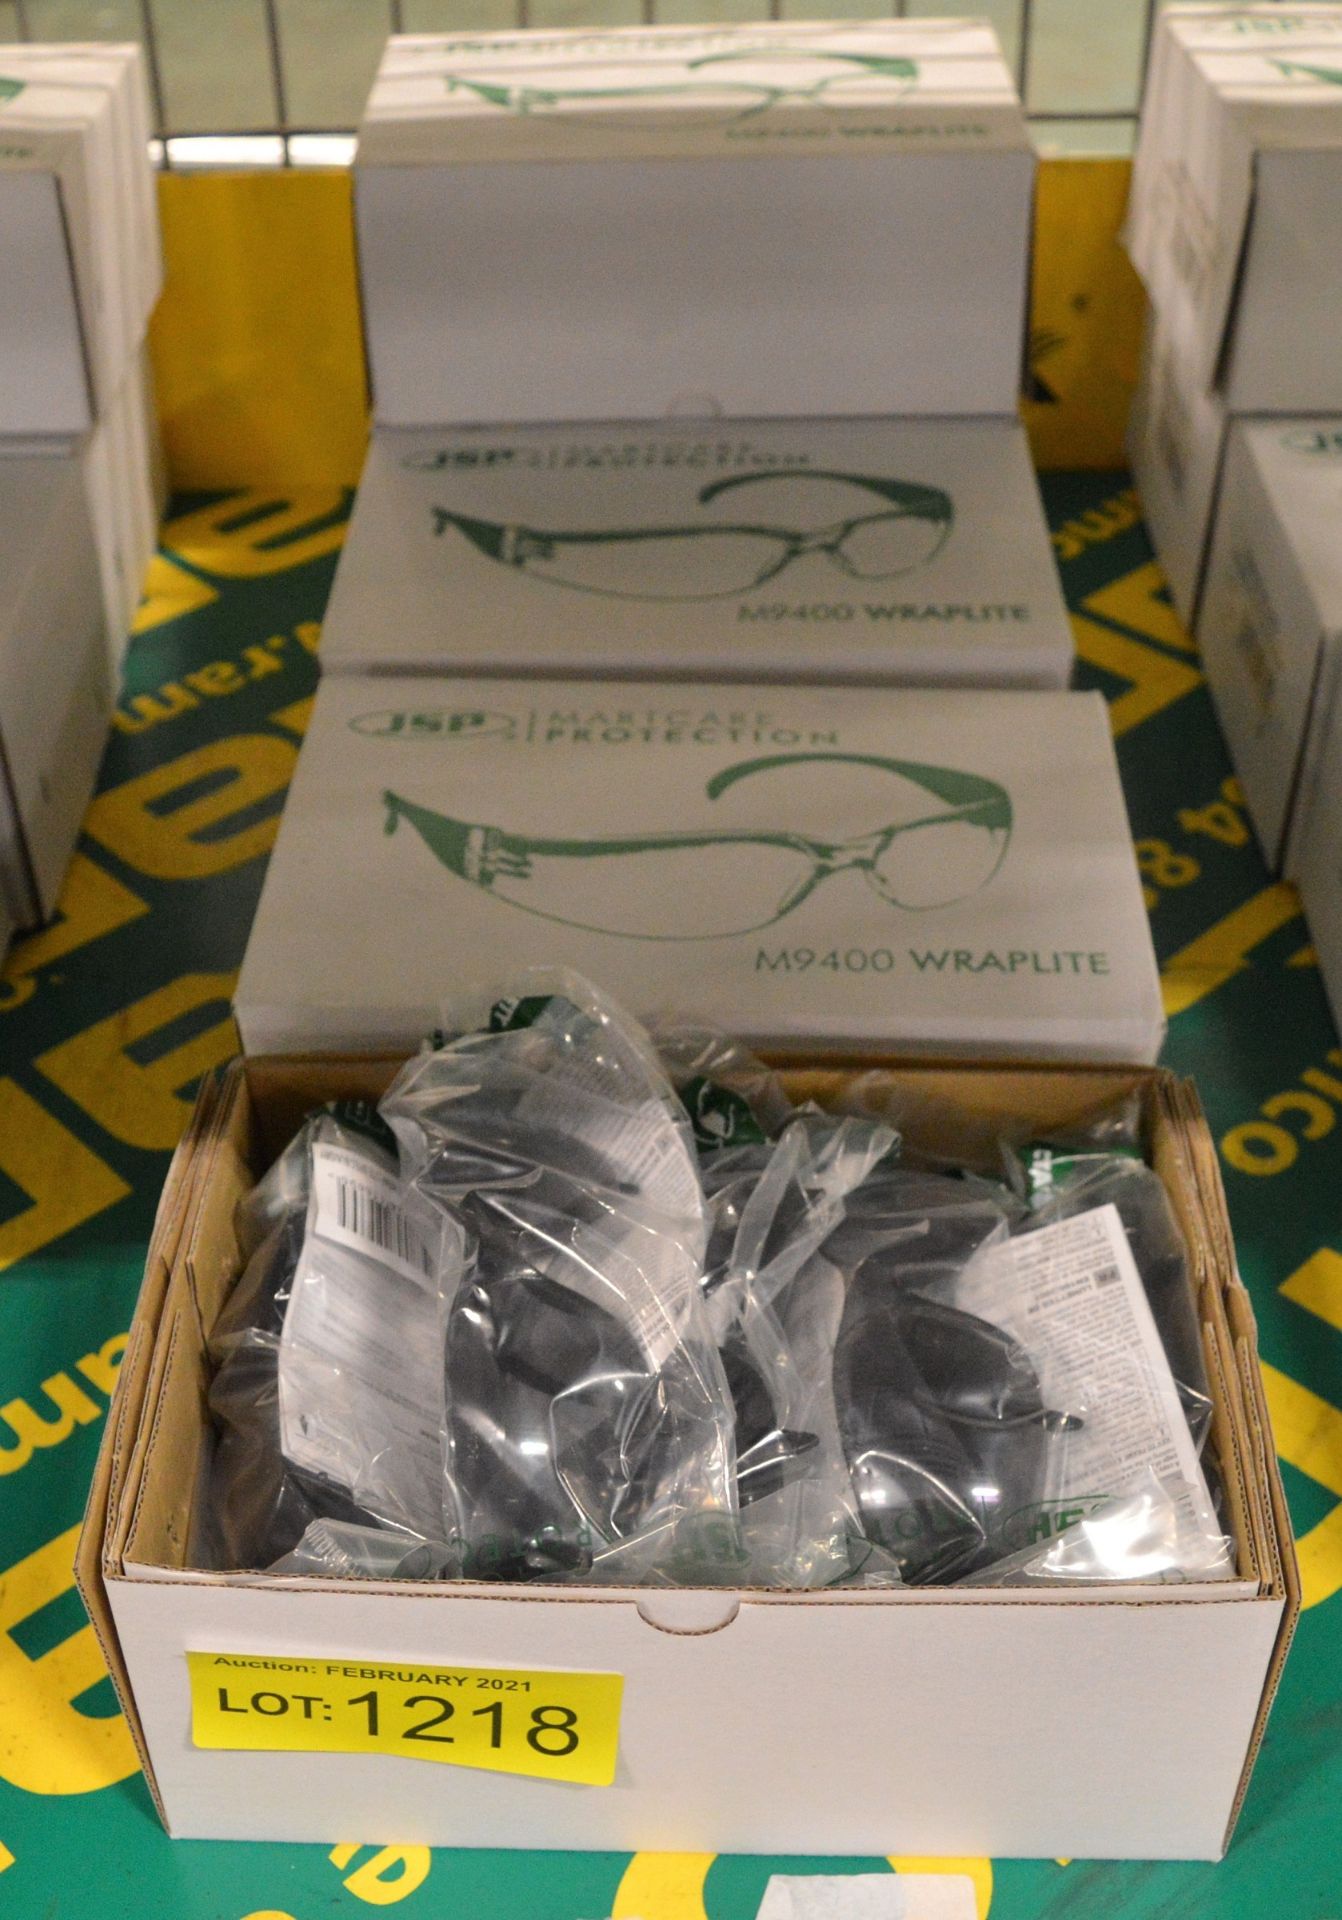 JSP M9400 martcare wrap lite spec safety glasses - 10 per box - 5 boxes